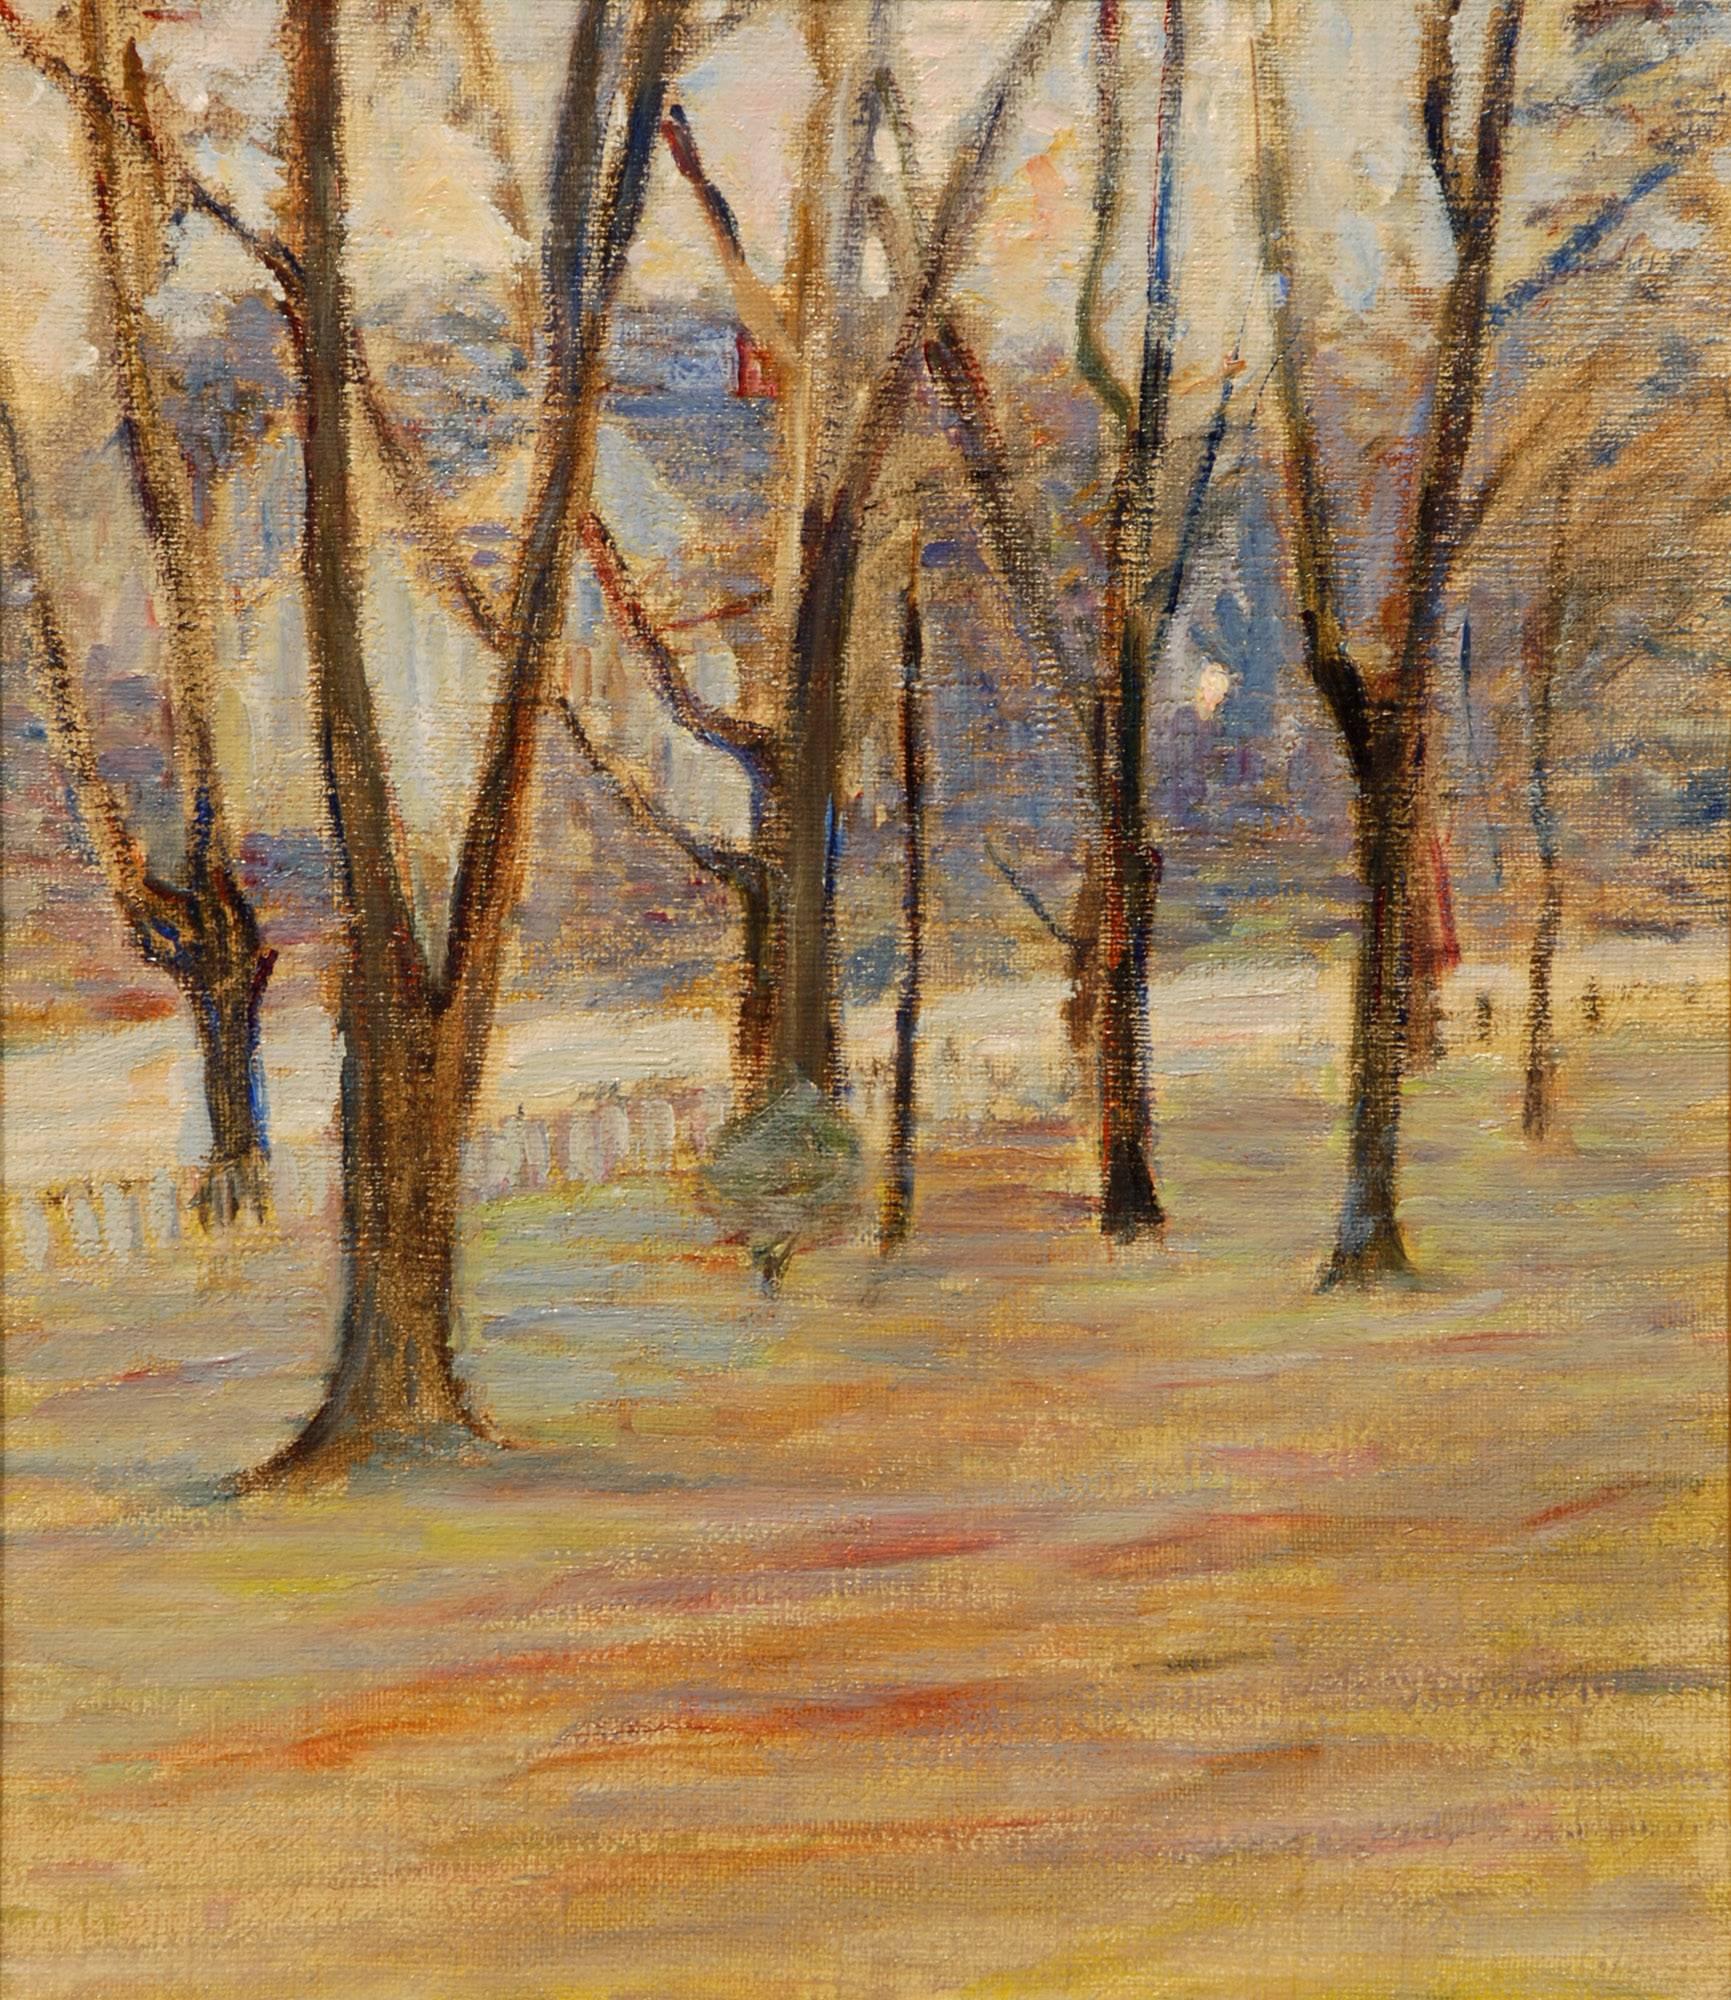 La peintre paysagiste impressionniste américaine Lucy Hariot Booth est née en 1869 dans l'Iowa et a étudié à l'Art Students League de New York sous la direction de Carroll Beckwith, Willard Metcalf, J. Alden Weir et John Henry Twachtman. Booth a